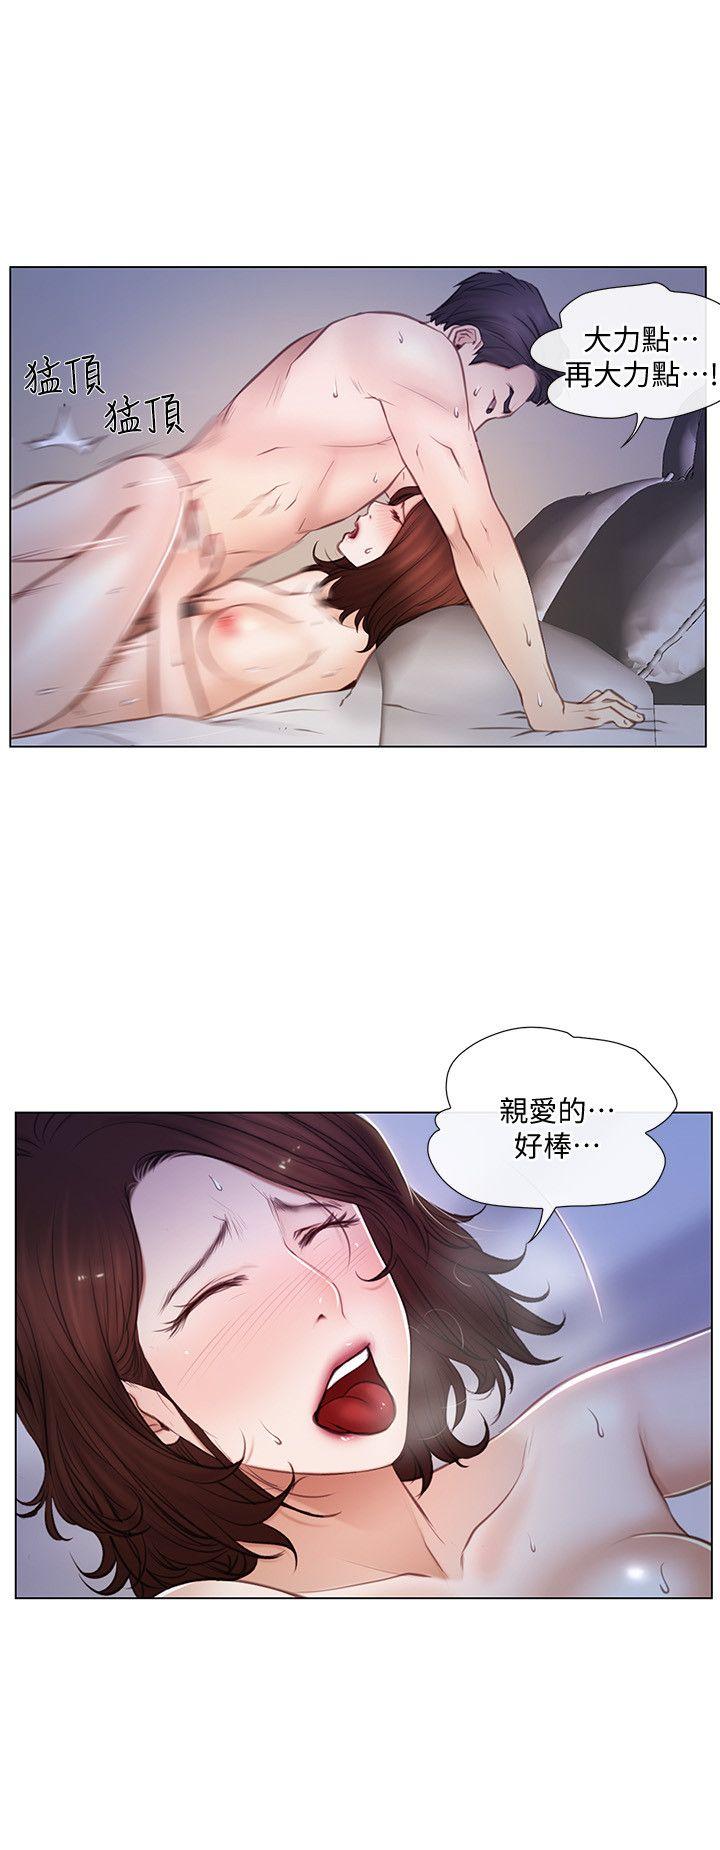 韩国污漫画 人夫的悸動 第6话-没穿内裤和自慰 6